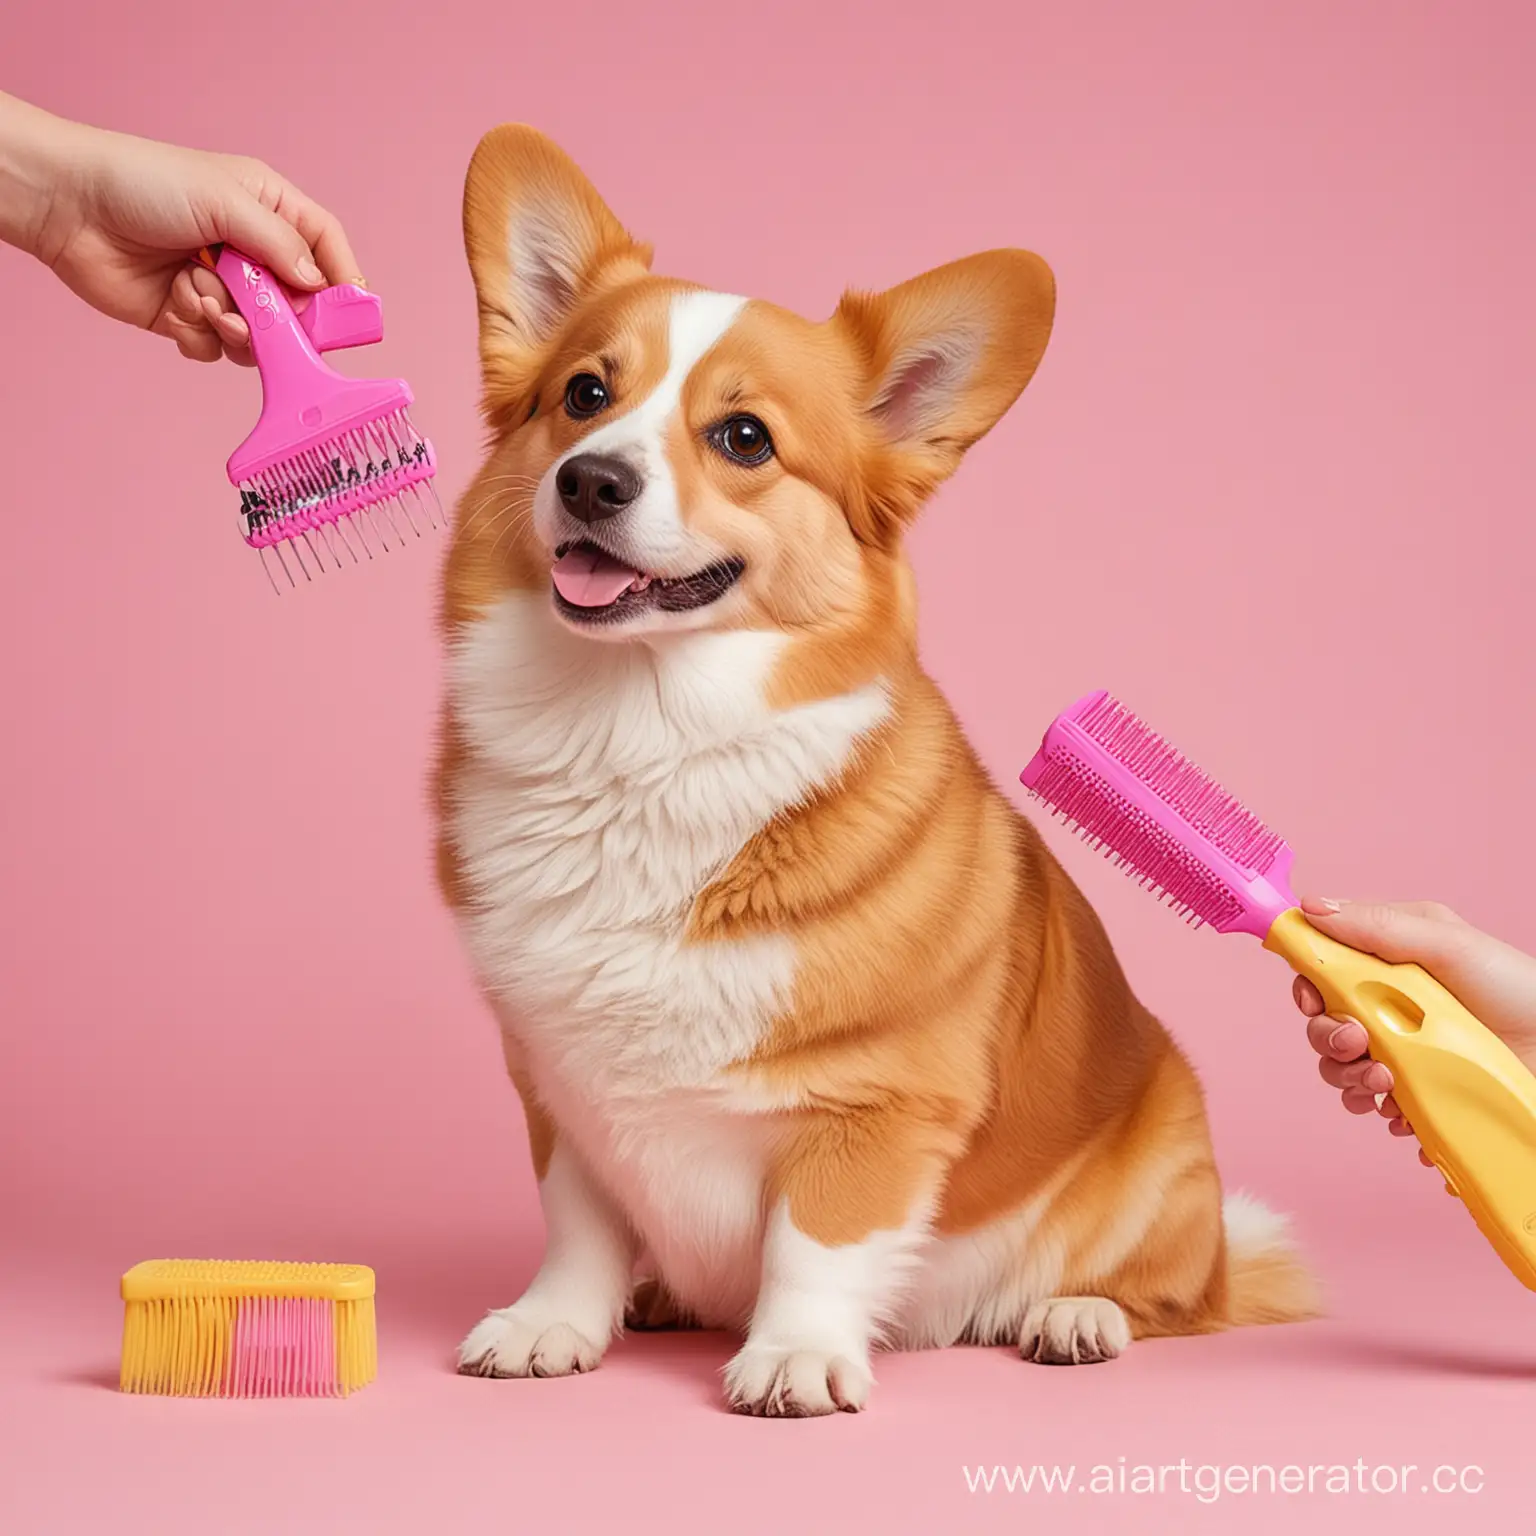 нарисуй собаку породы корги на груминге, слева от собаки стоит грумер и держит в руке гребень, фон розовый, есть желтые акценты